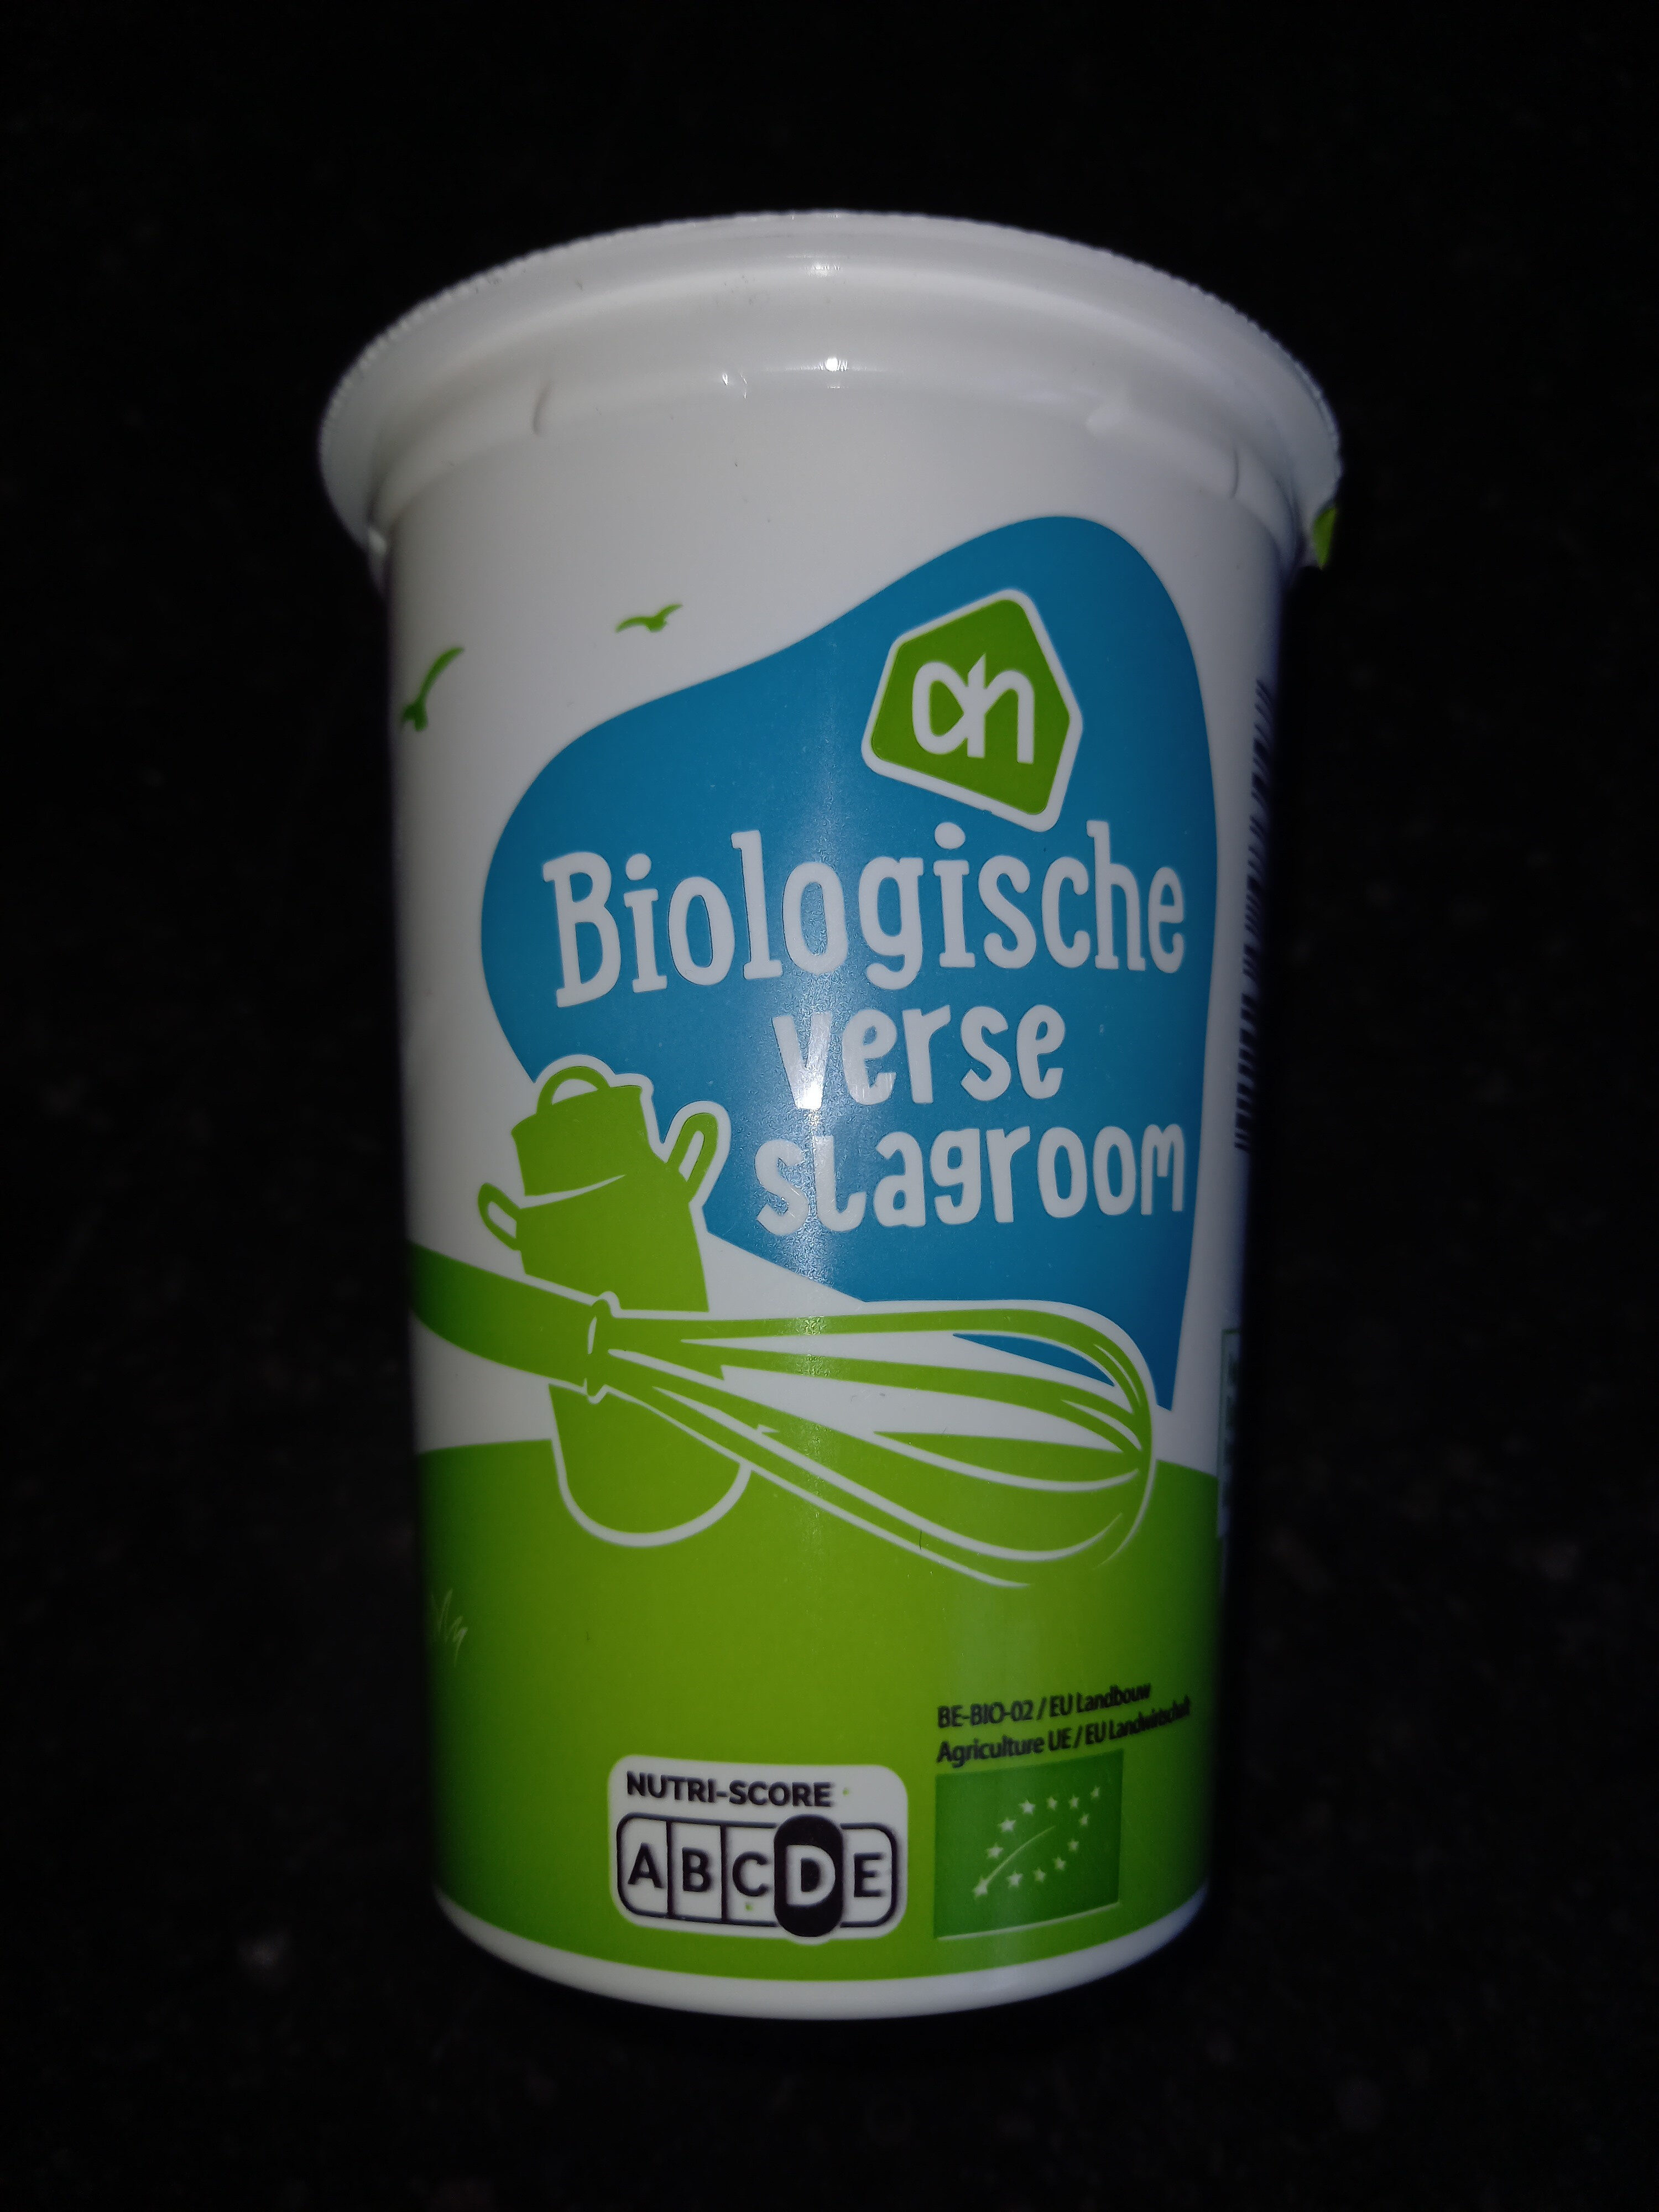 Biologische verse slagroom - Product - nl